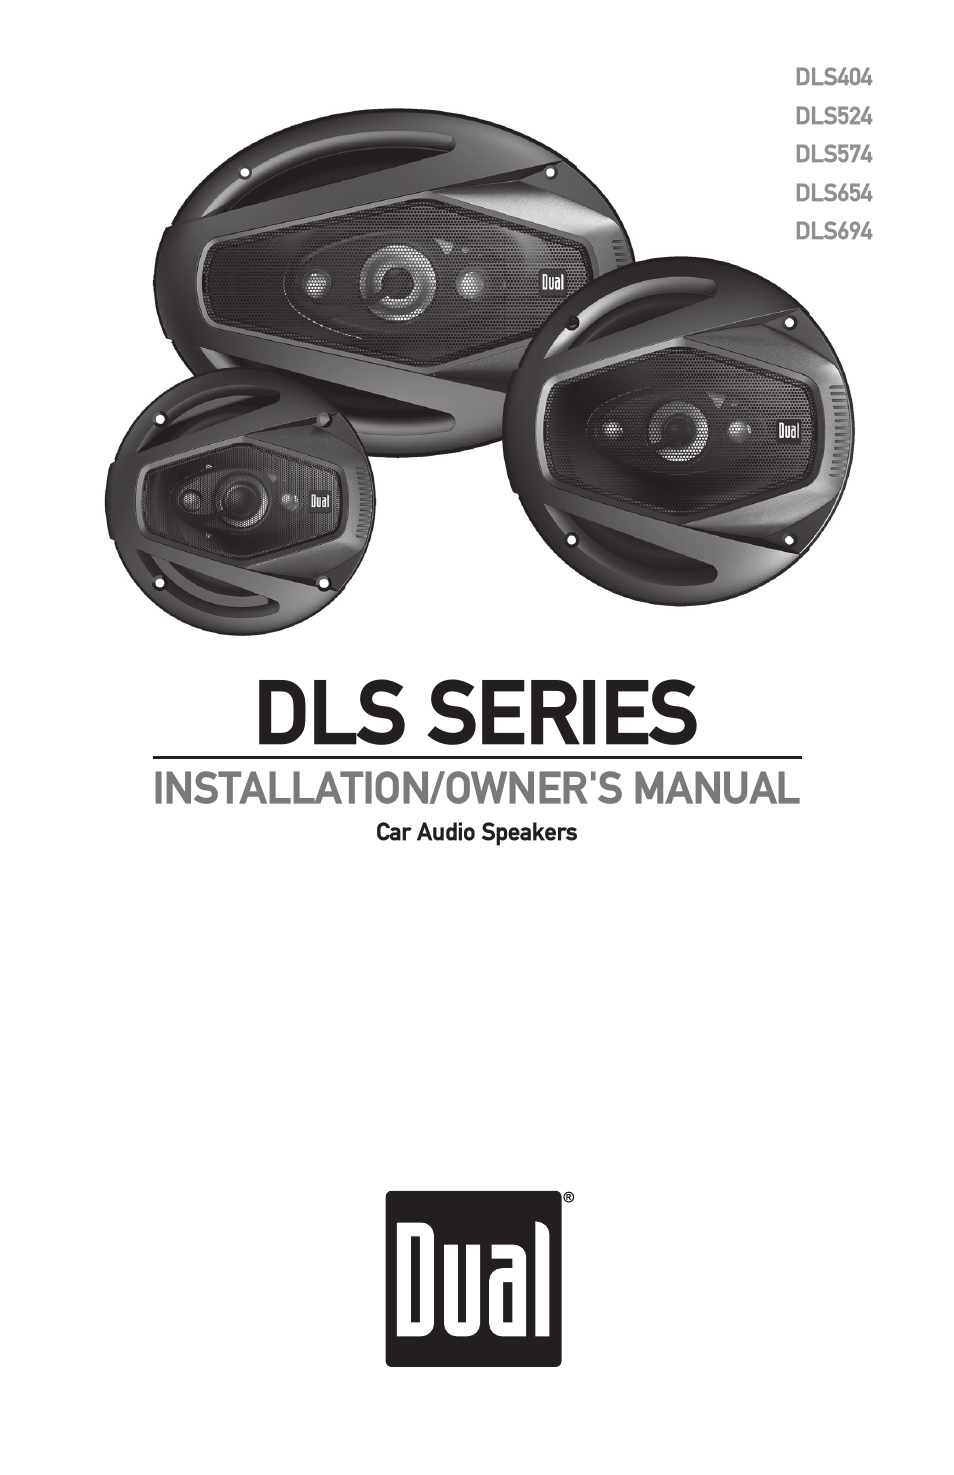 DLS Series